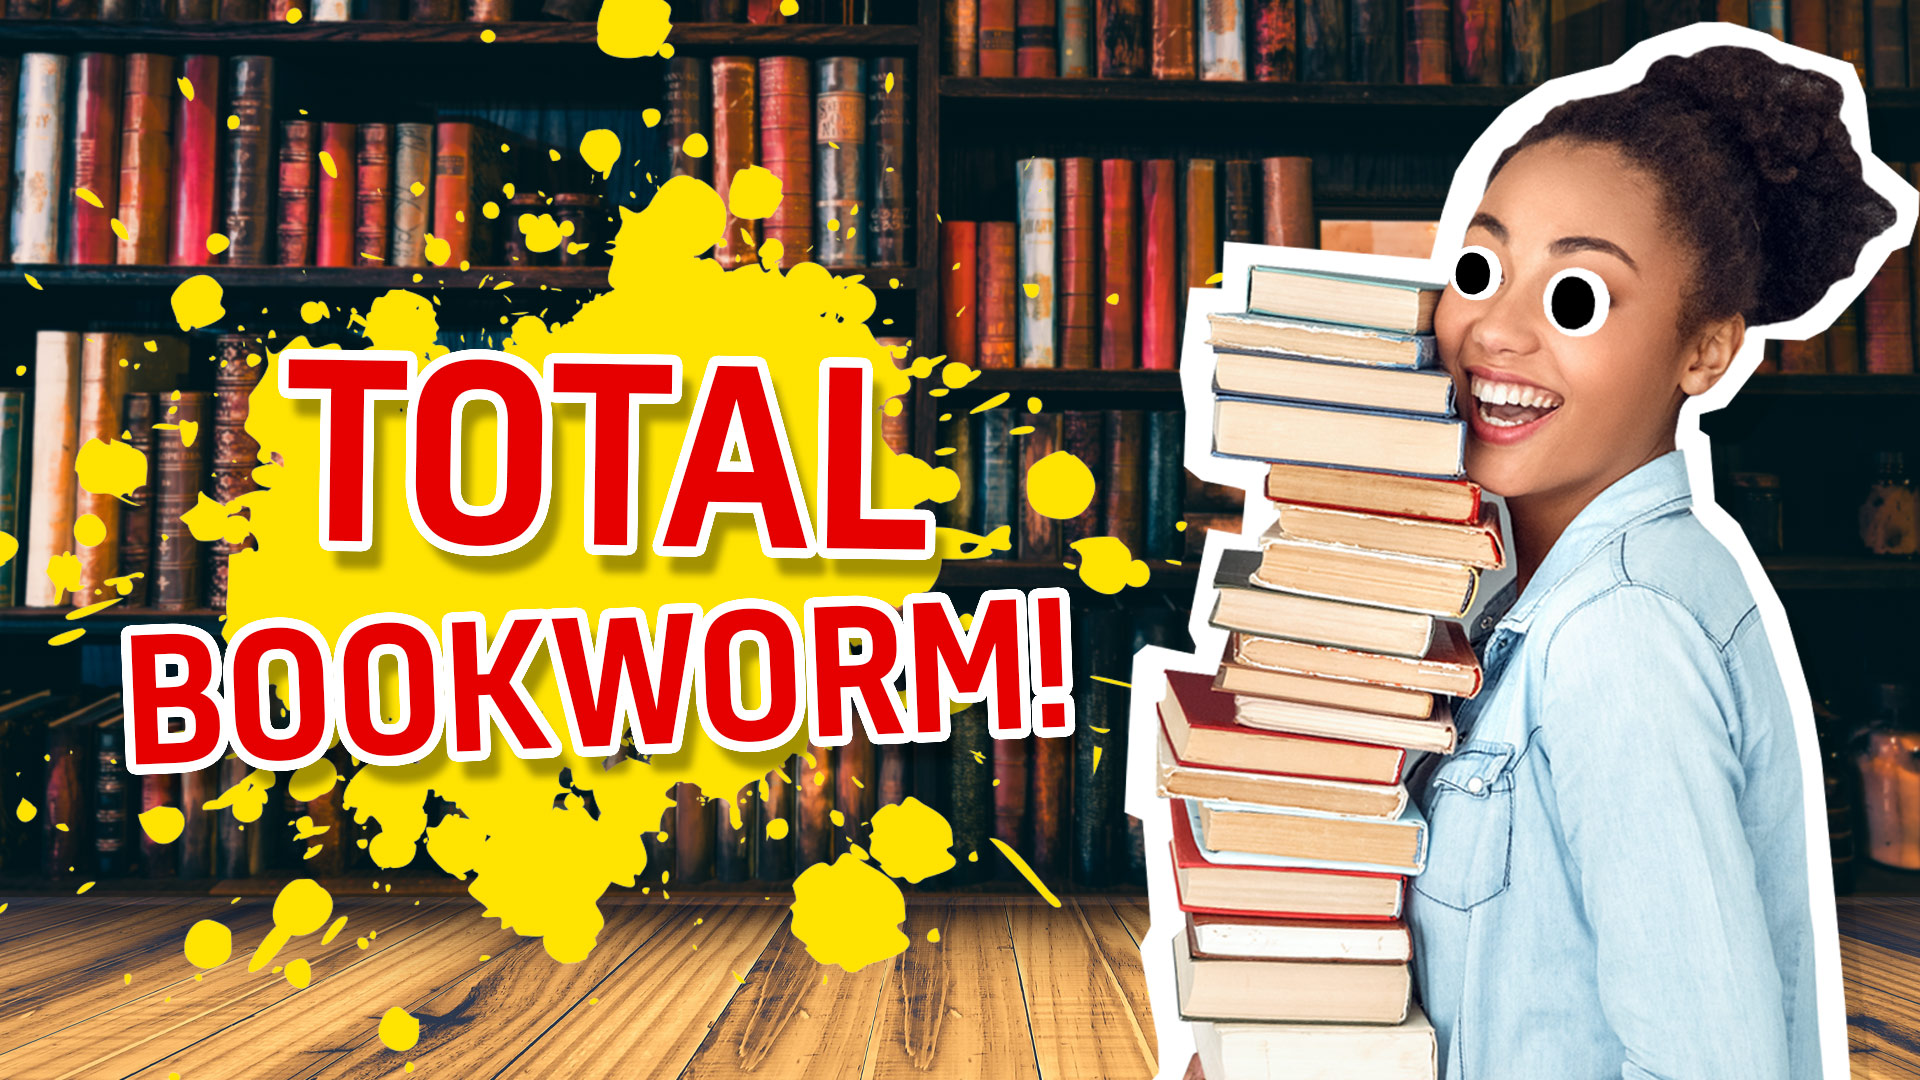 Result: Total Bookworm